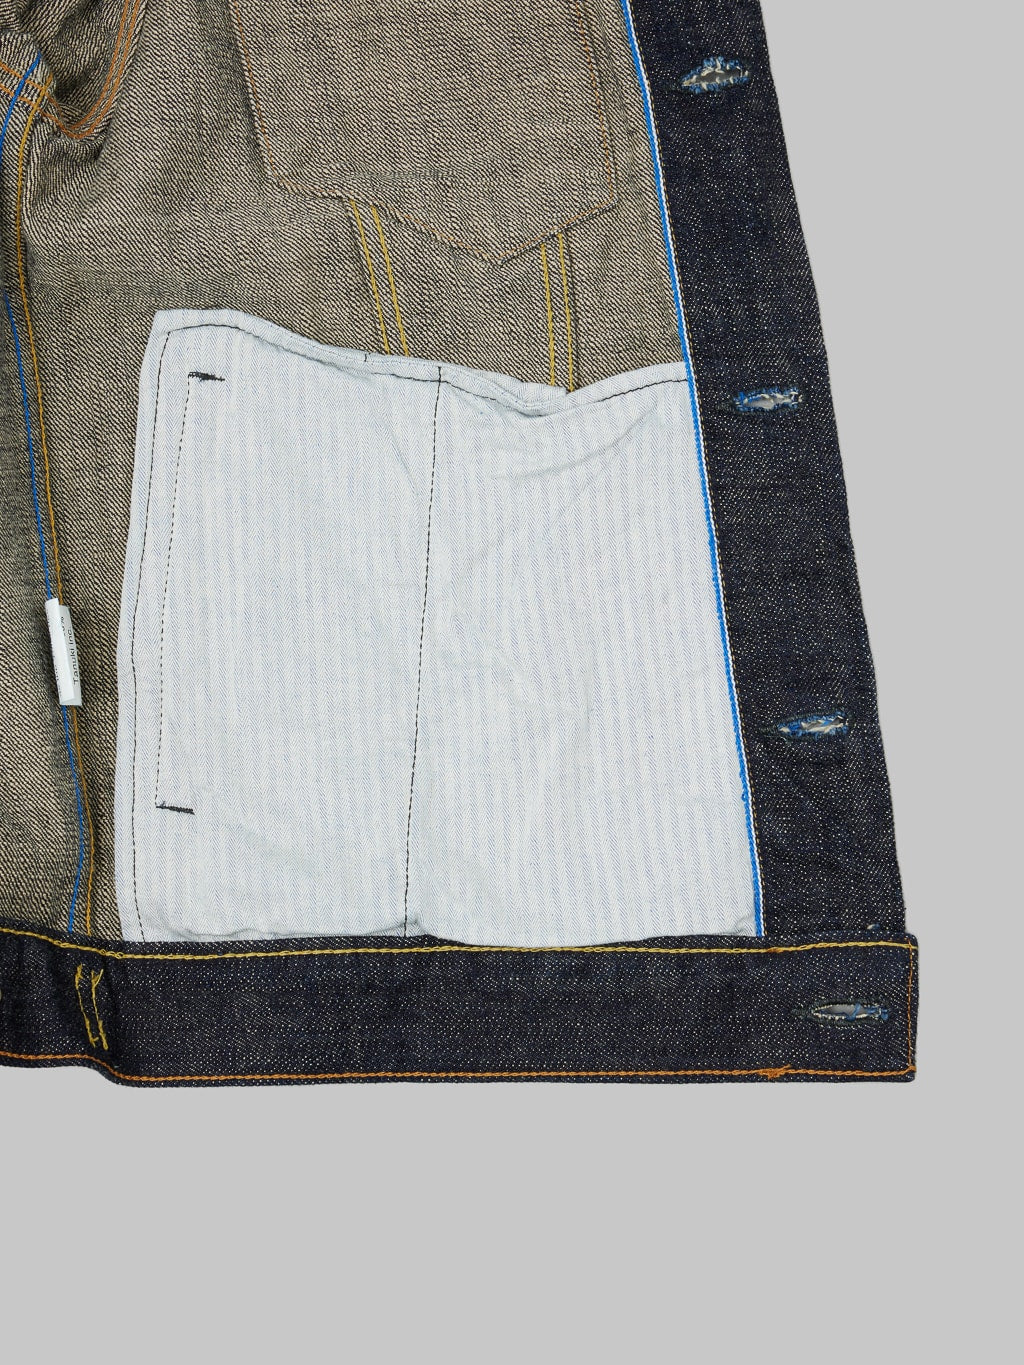 Tanuki zetto benkei type III jacket interior pocket